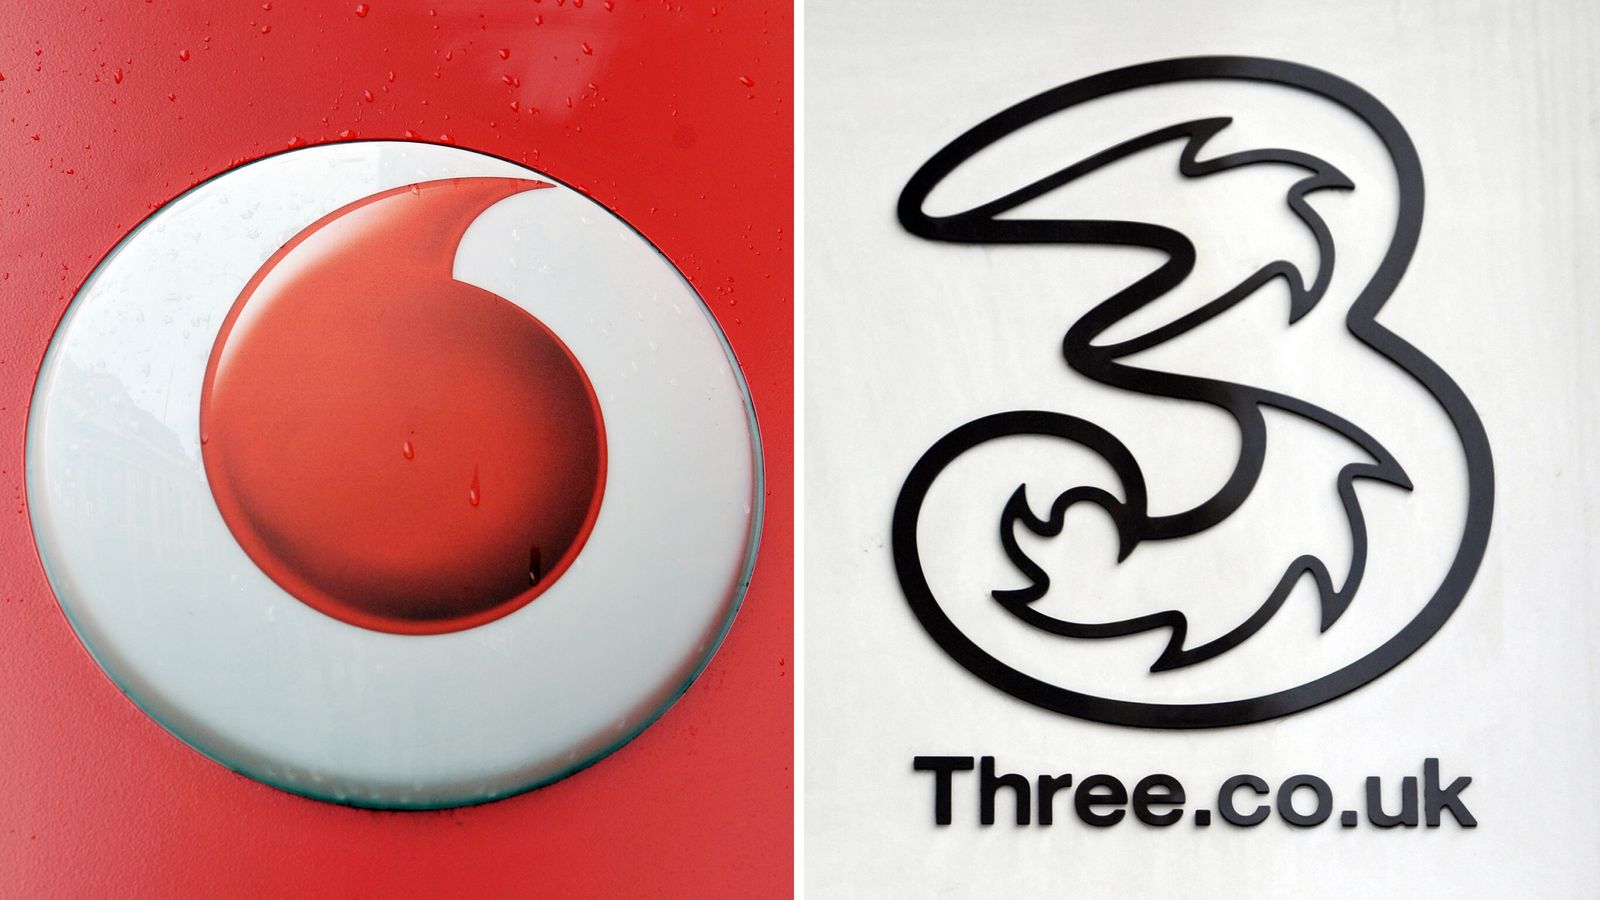 Сливането на Vodafone и Three може да доведе до по-високи цени, предупреждава пазач